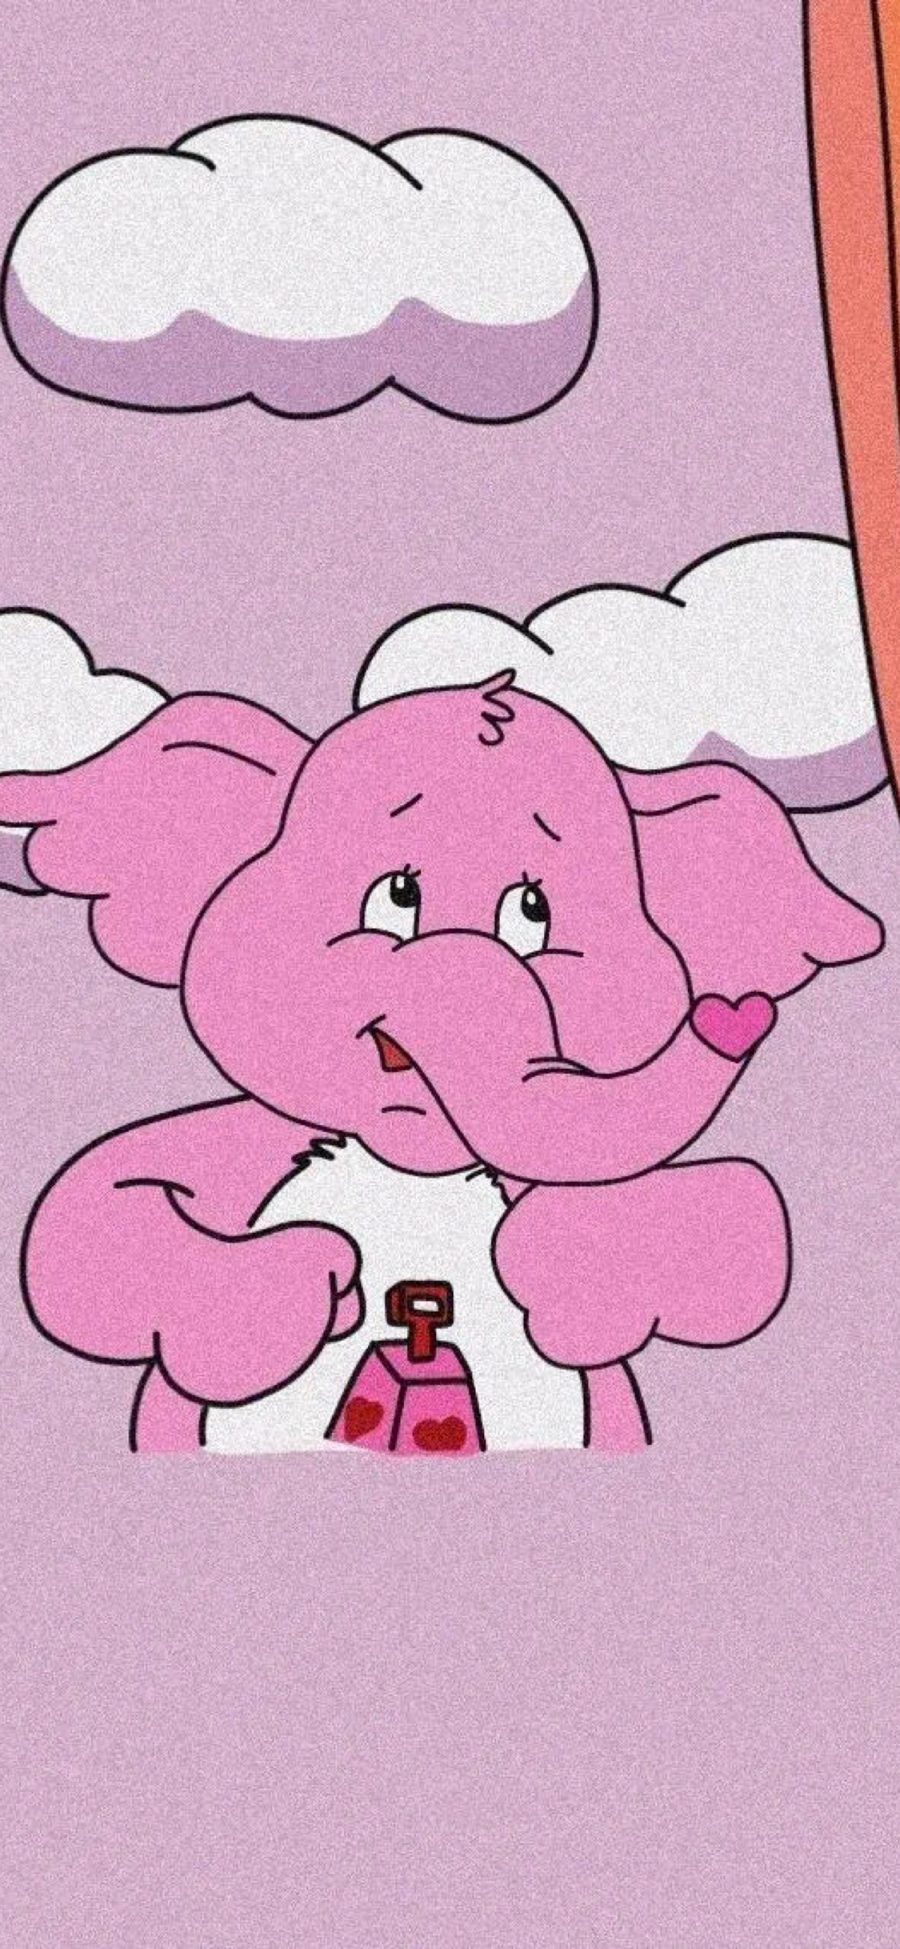 [2436×1125]动画 爱心熊 大象 梦梦 粉色 苹果手机动漫壁纸图片